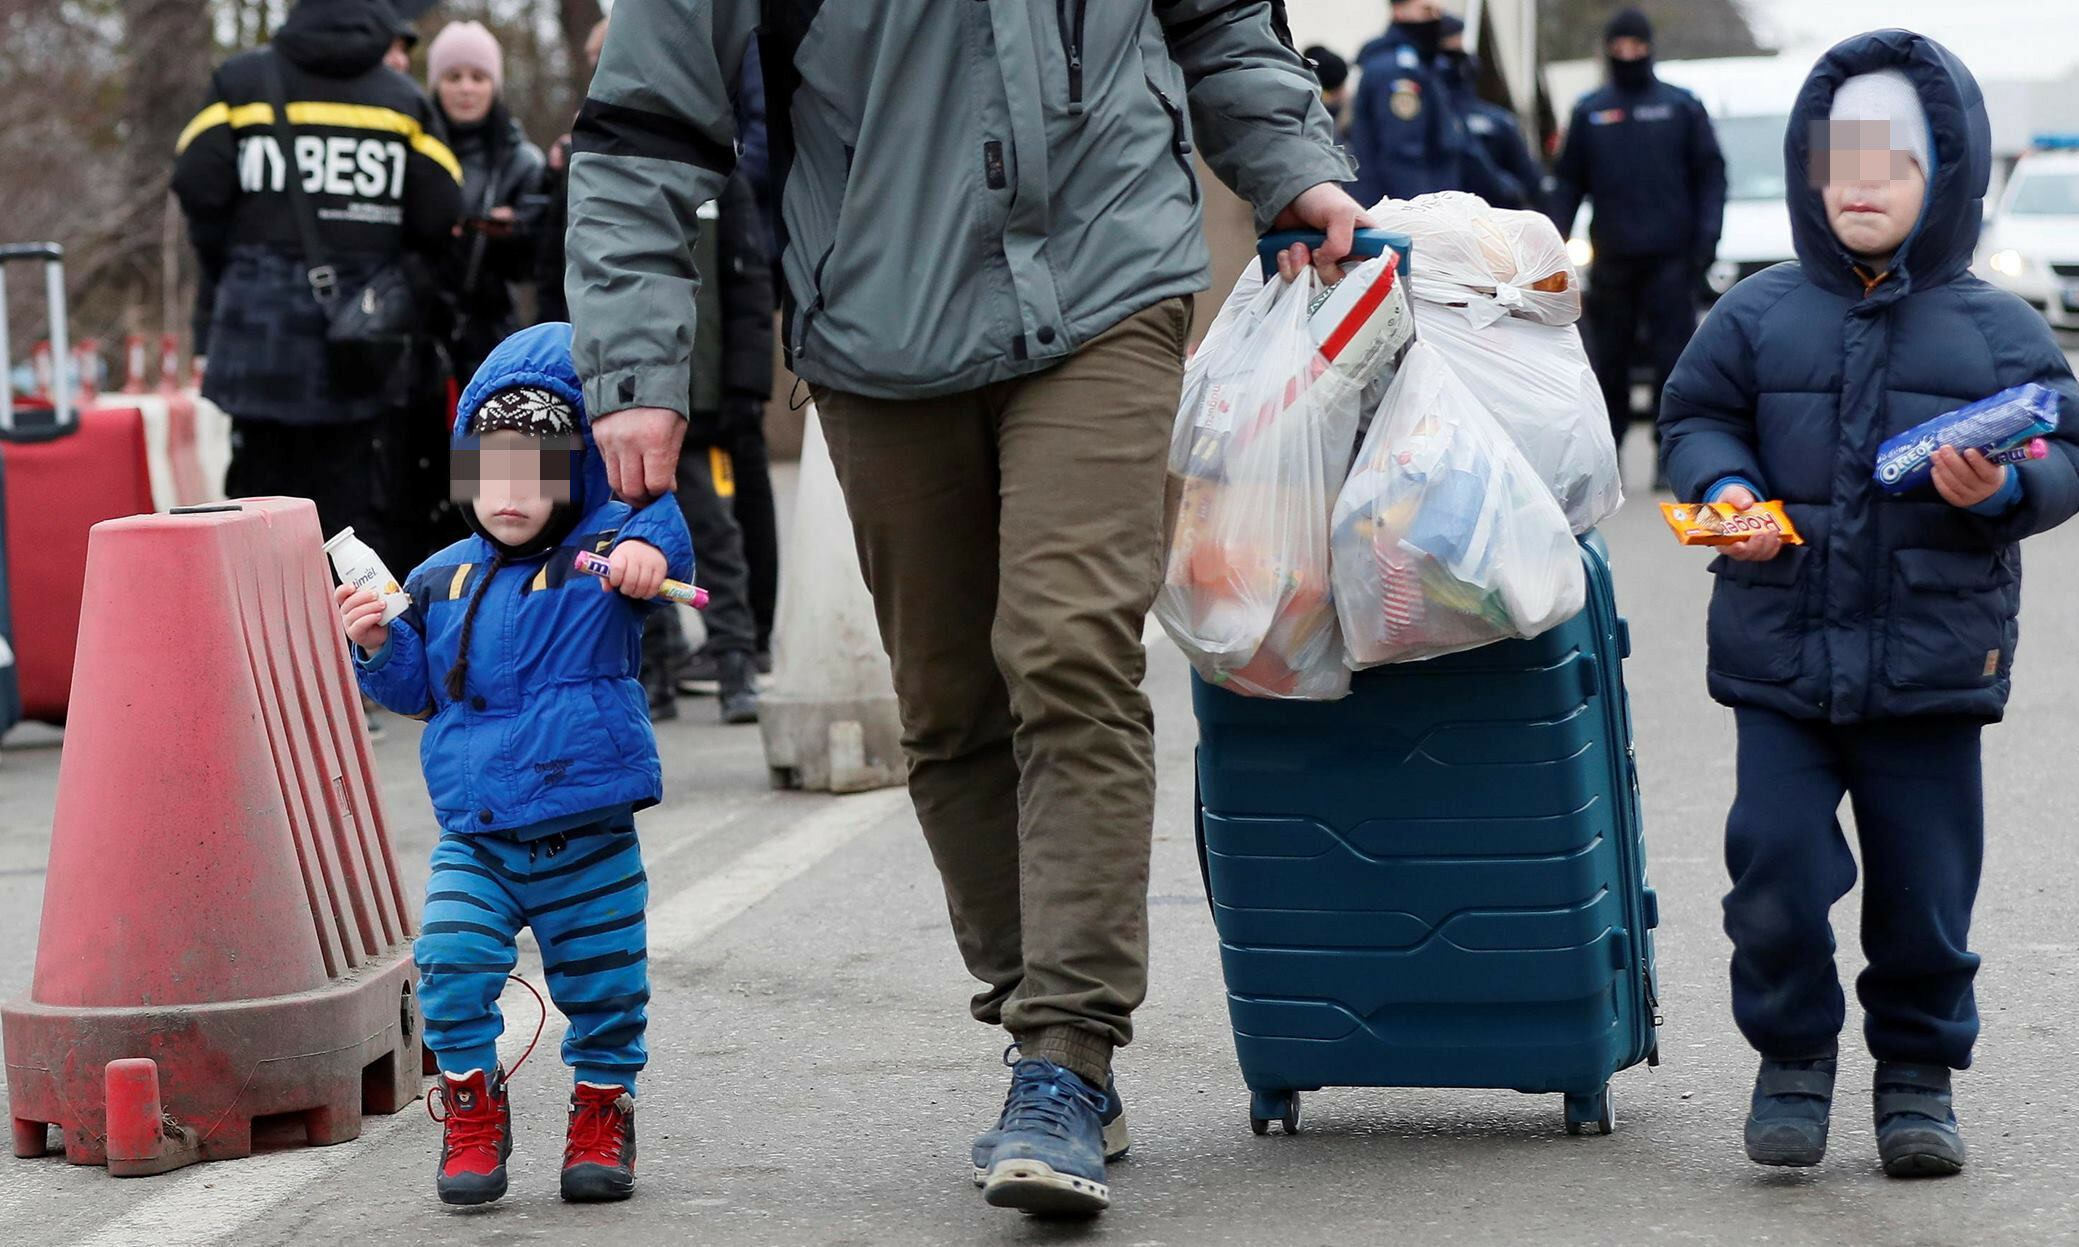 La crisi umanitaria in Ucraina